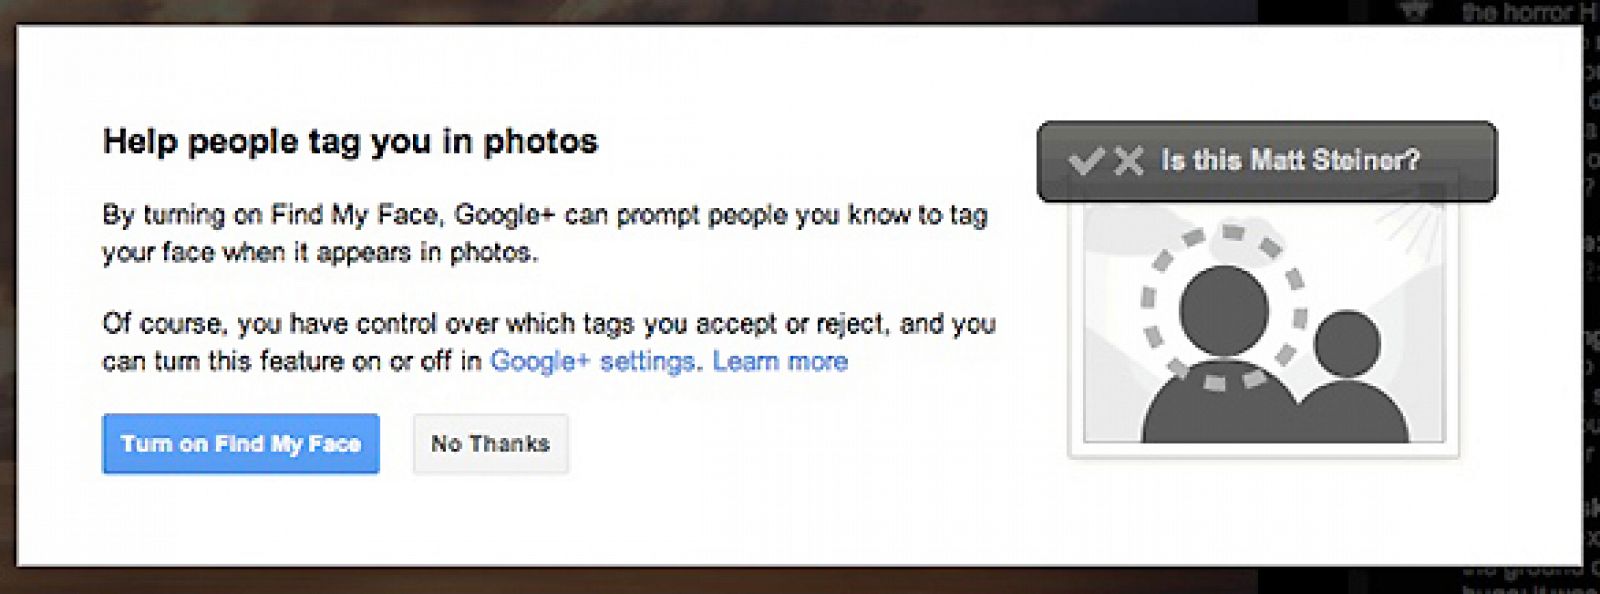 La aplicación 'Find my face' está pensada para facilitar el etiquetado de fotos